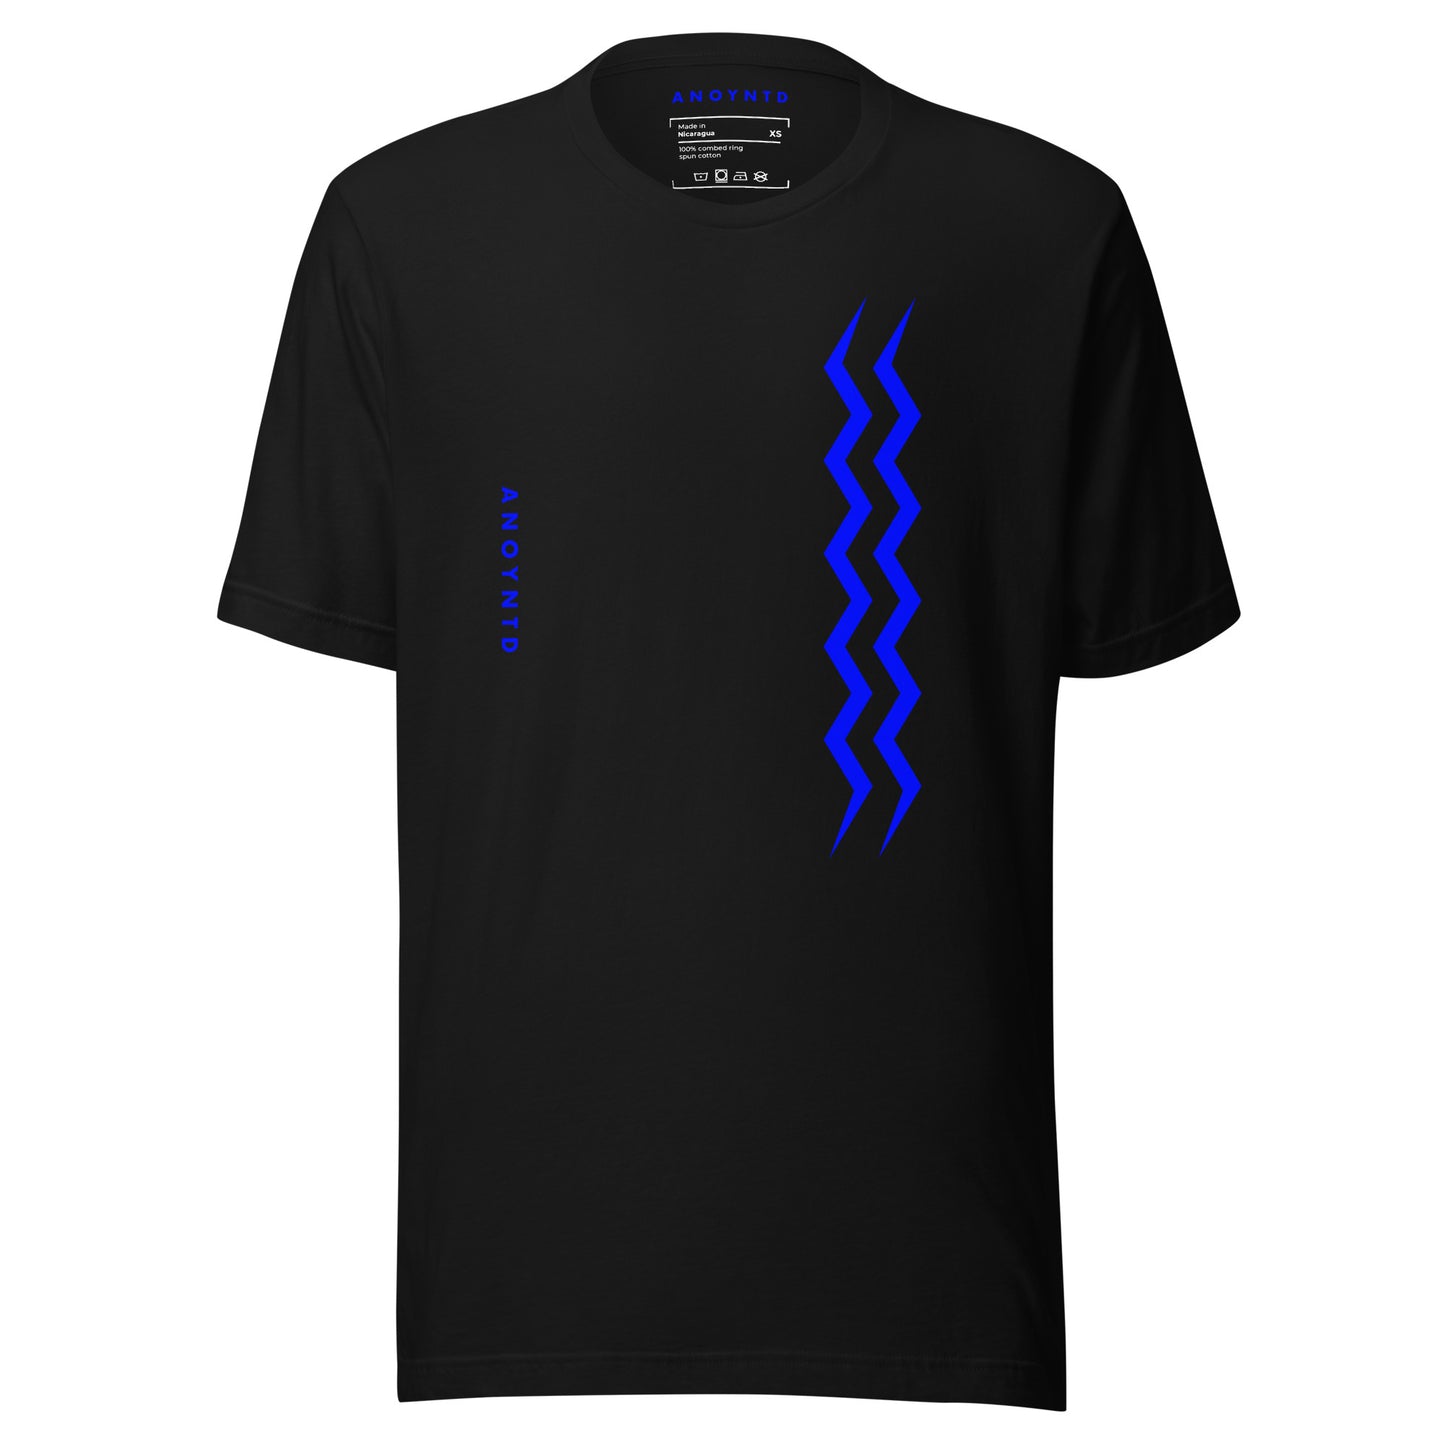 ANOYNTD Vertical Series (Bl) Unisex t-shirt